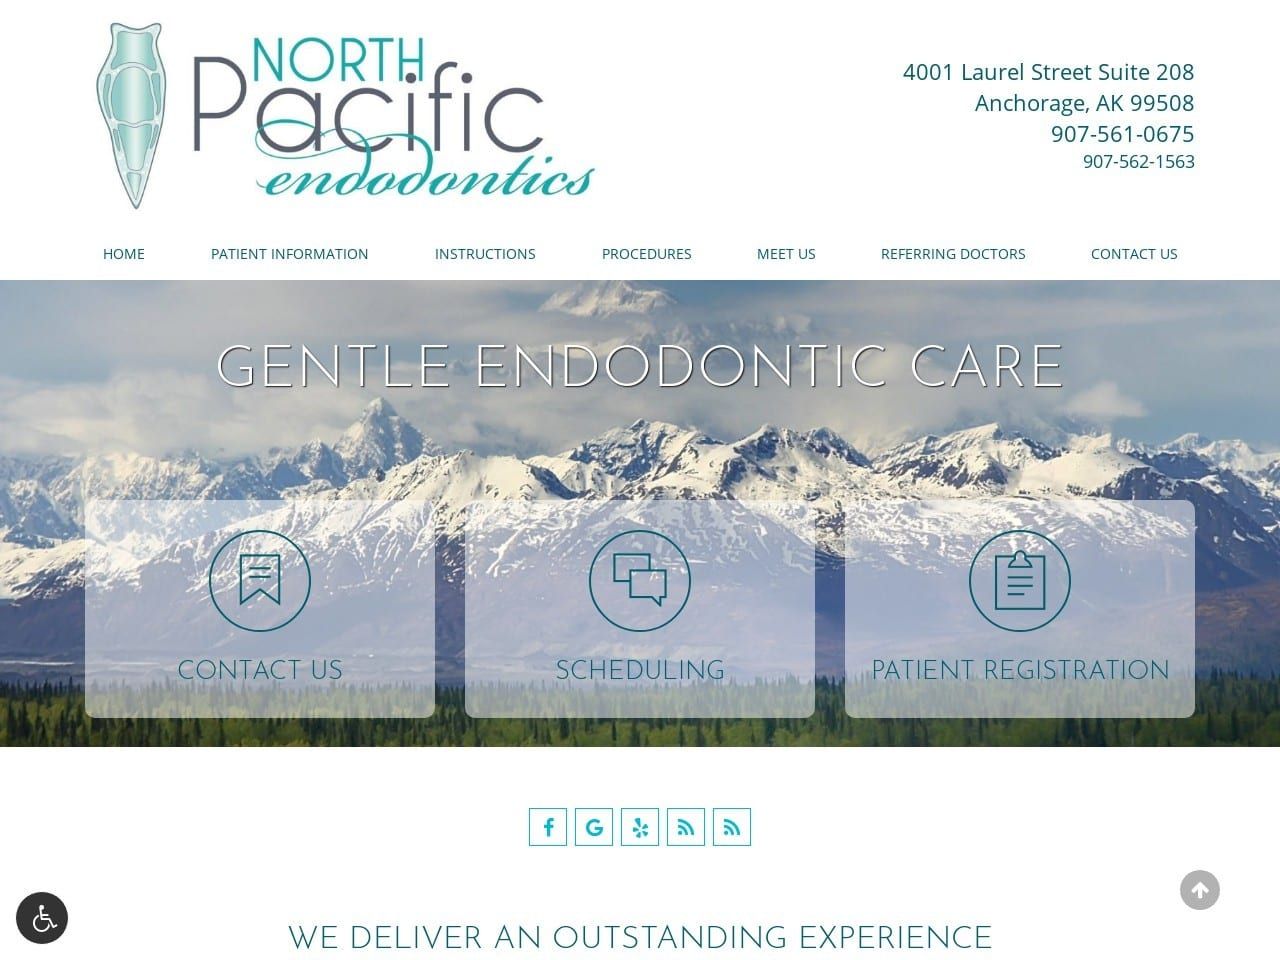 North Pacific Endodontics Website Screenshot from northpacificendodontics.com